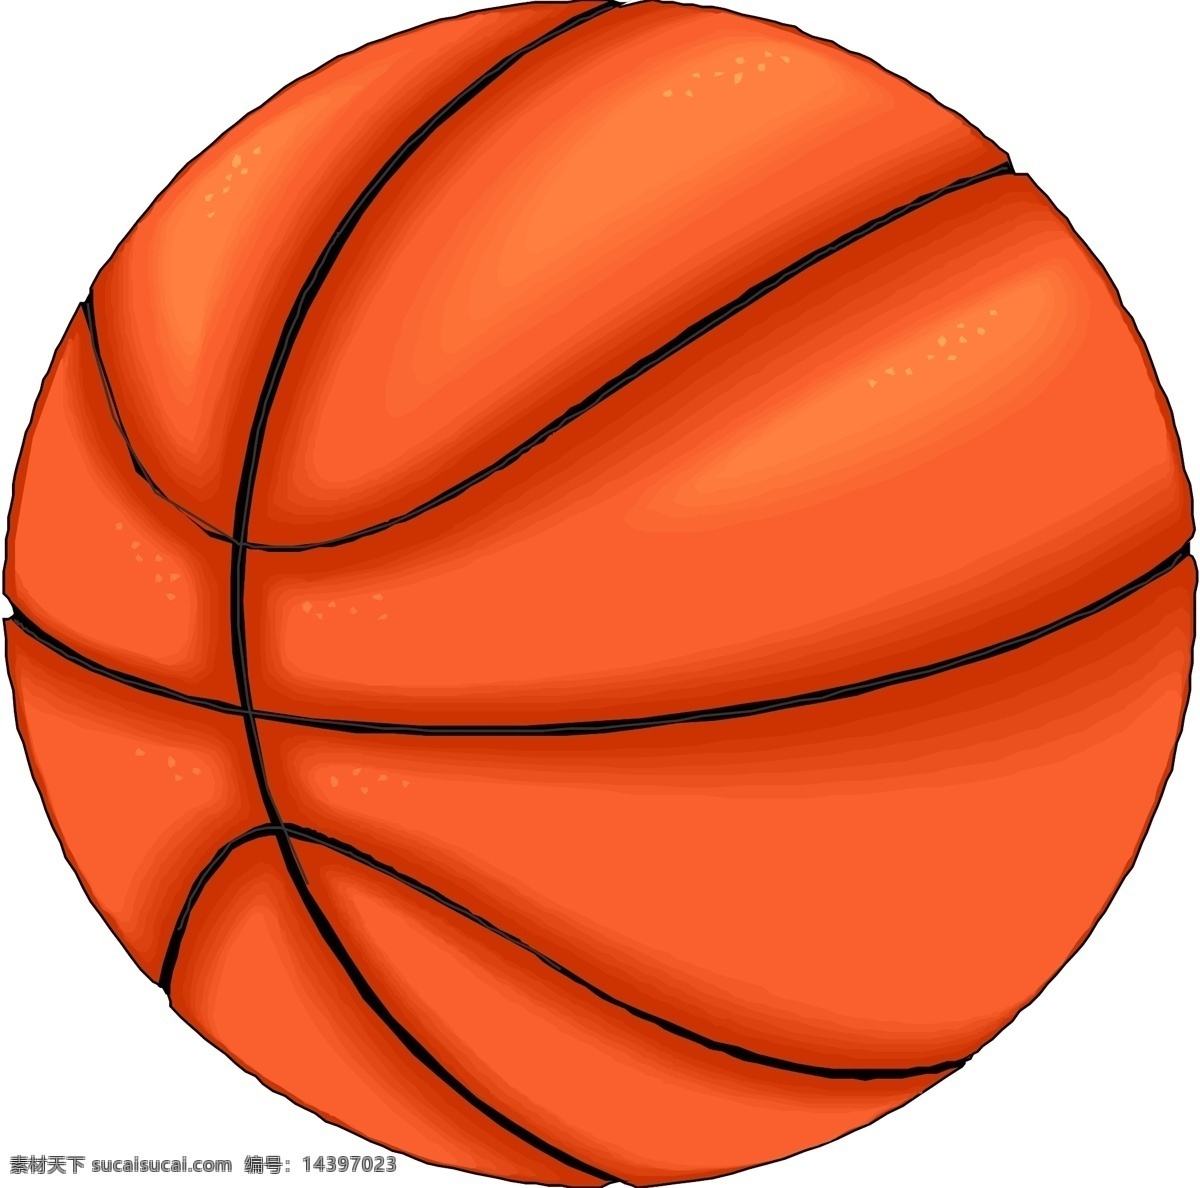 篮球 矢量图 篮球矢量图 商业矢量 矢量下载 矢量运动 网页矢量 其他矢量图